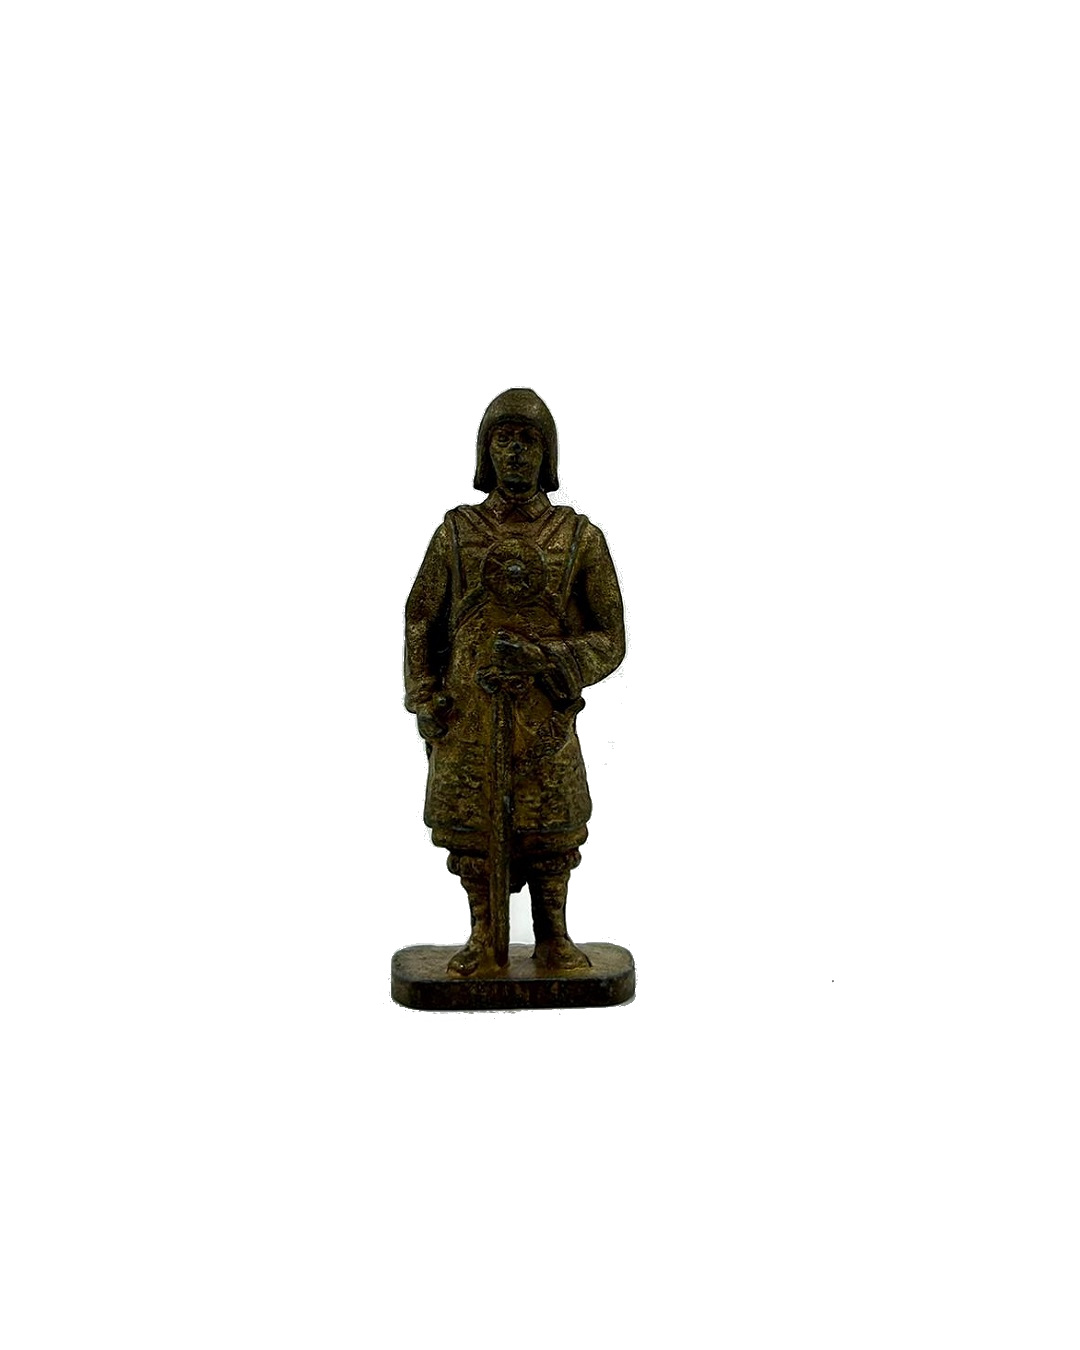 Antique miniature soldier figure